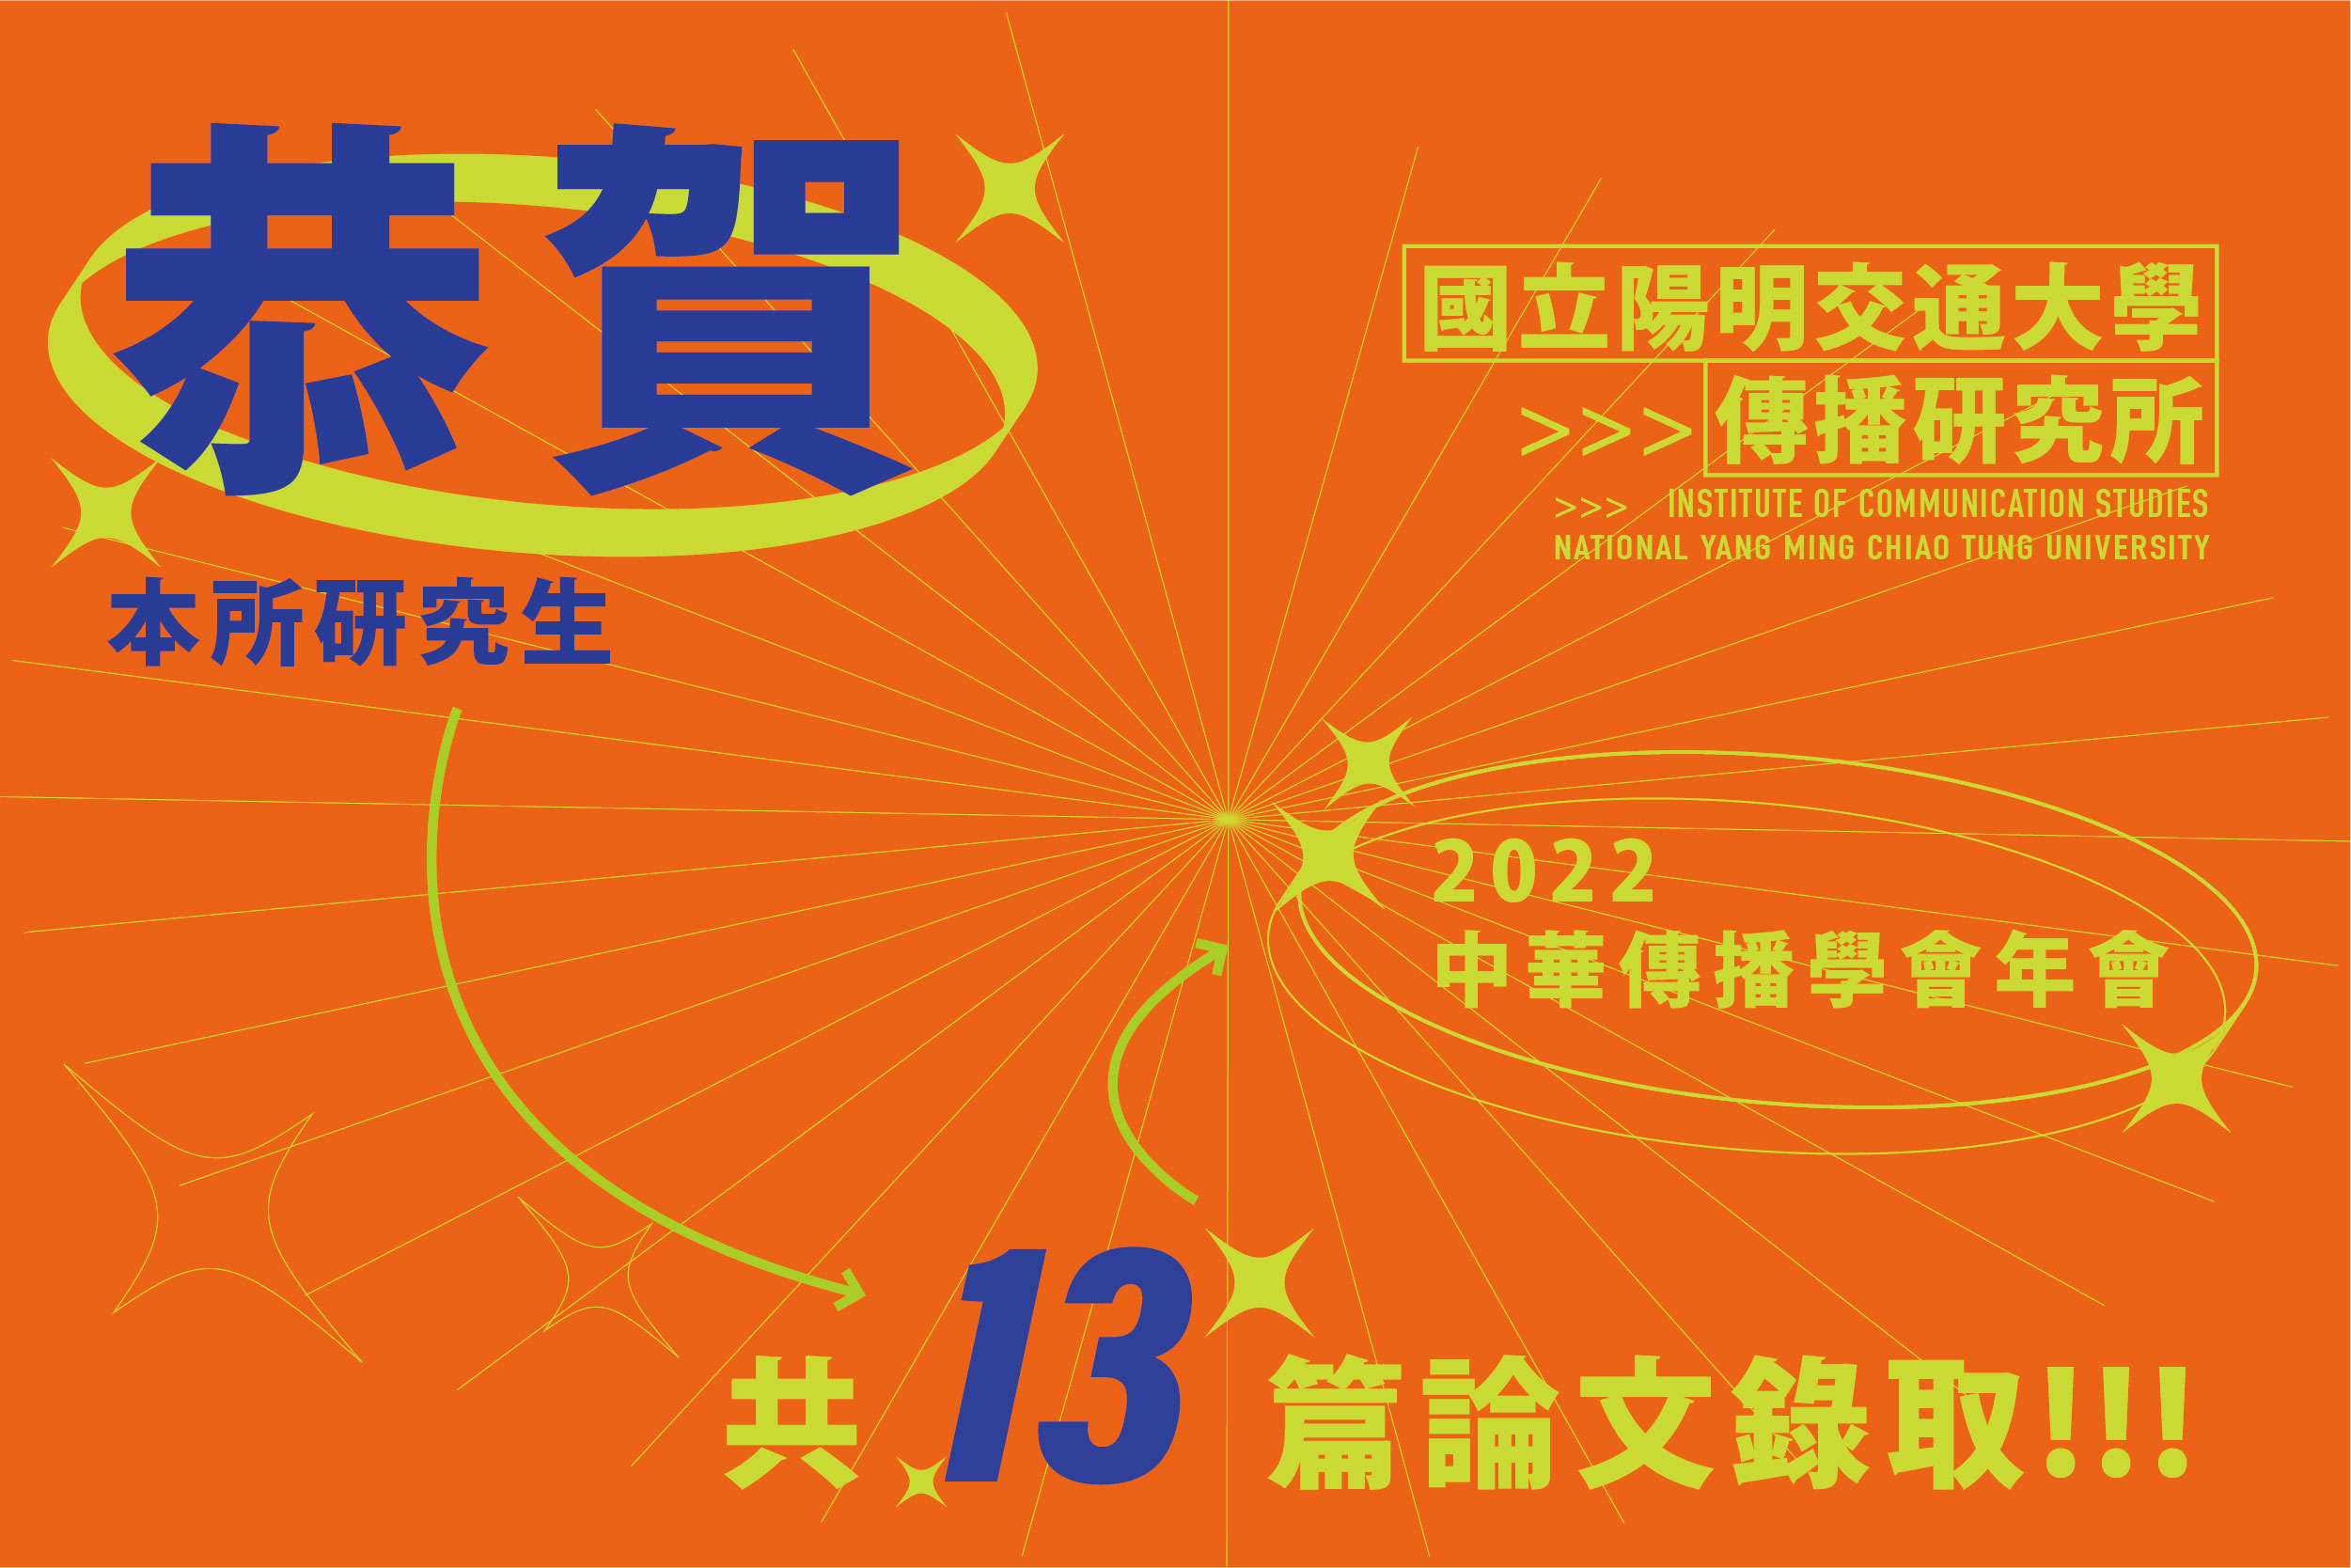 【傳播所】本所師生論文入選2022中華傳播學會年會暨論文研討會「後疫情時代的傳播與社會：媒體做為基礎」